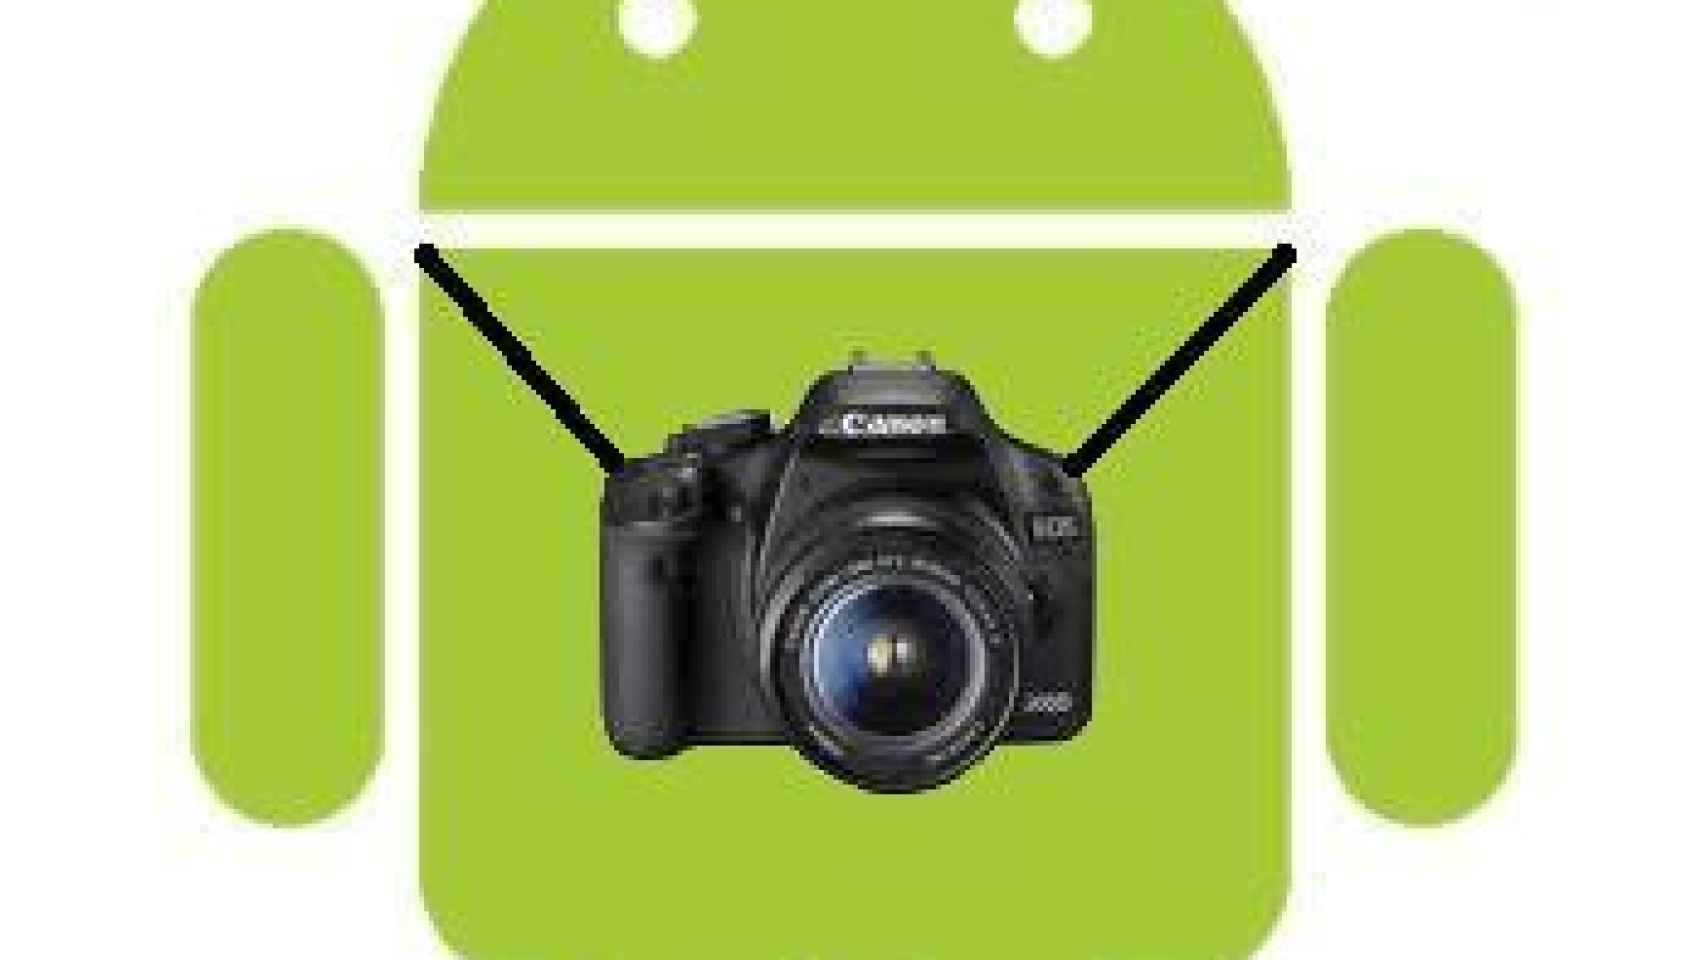 Galerías de imágenes y fotos para Android